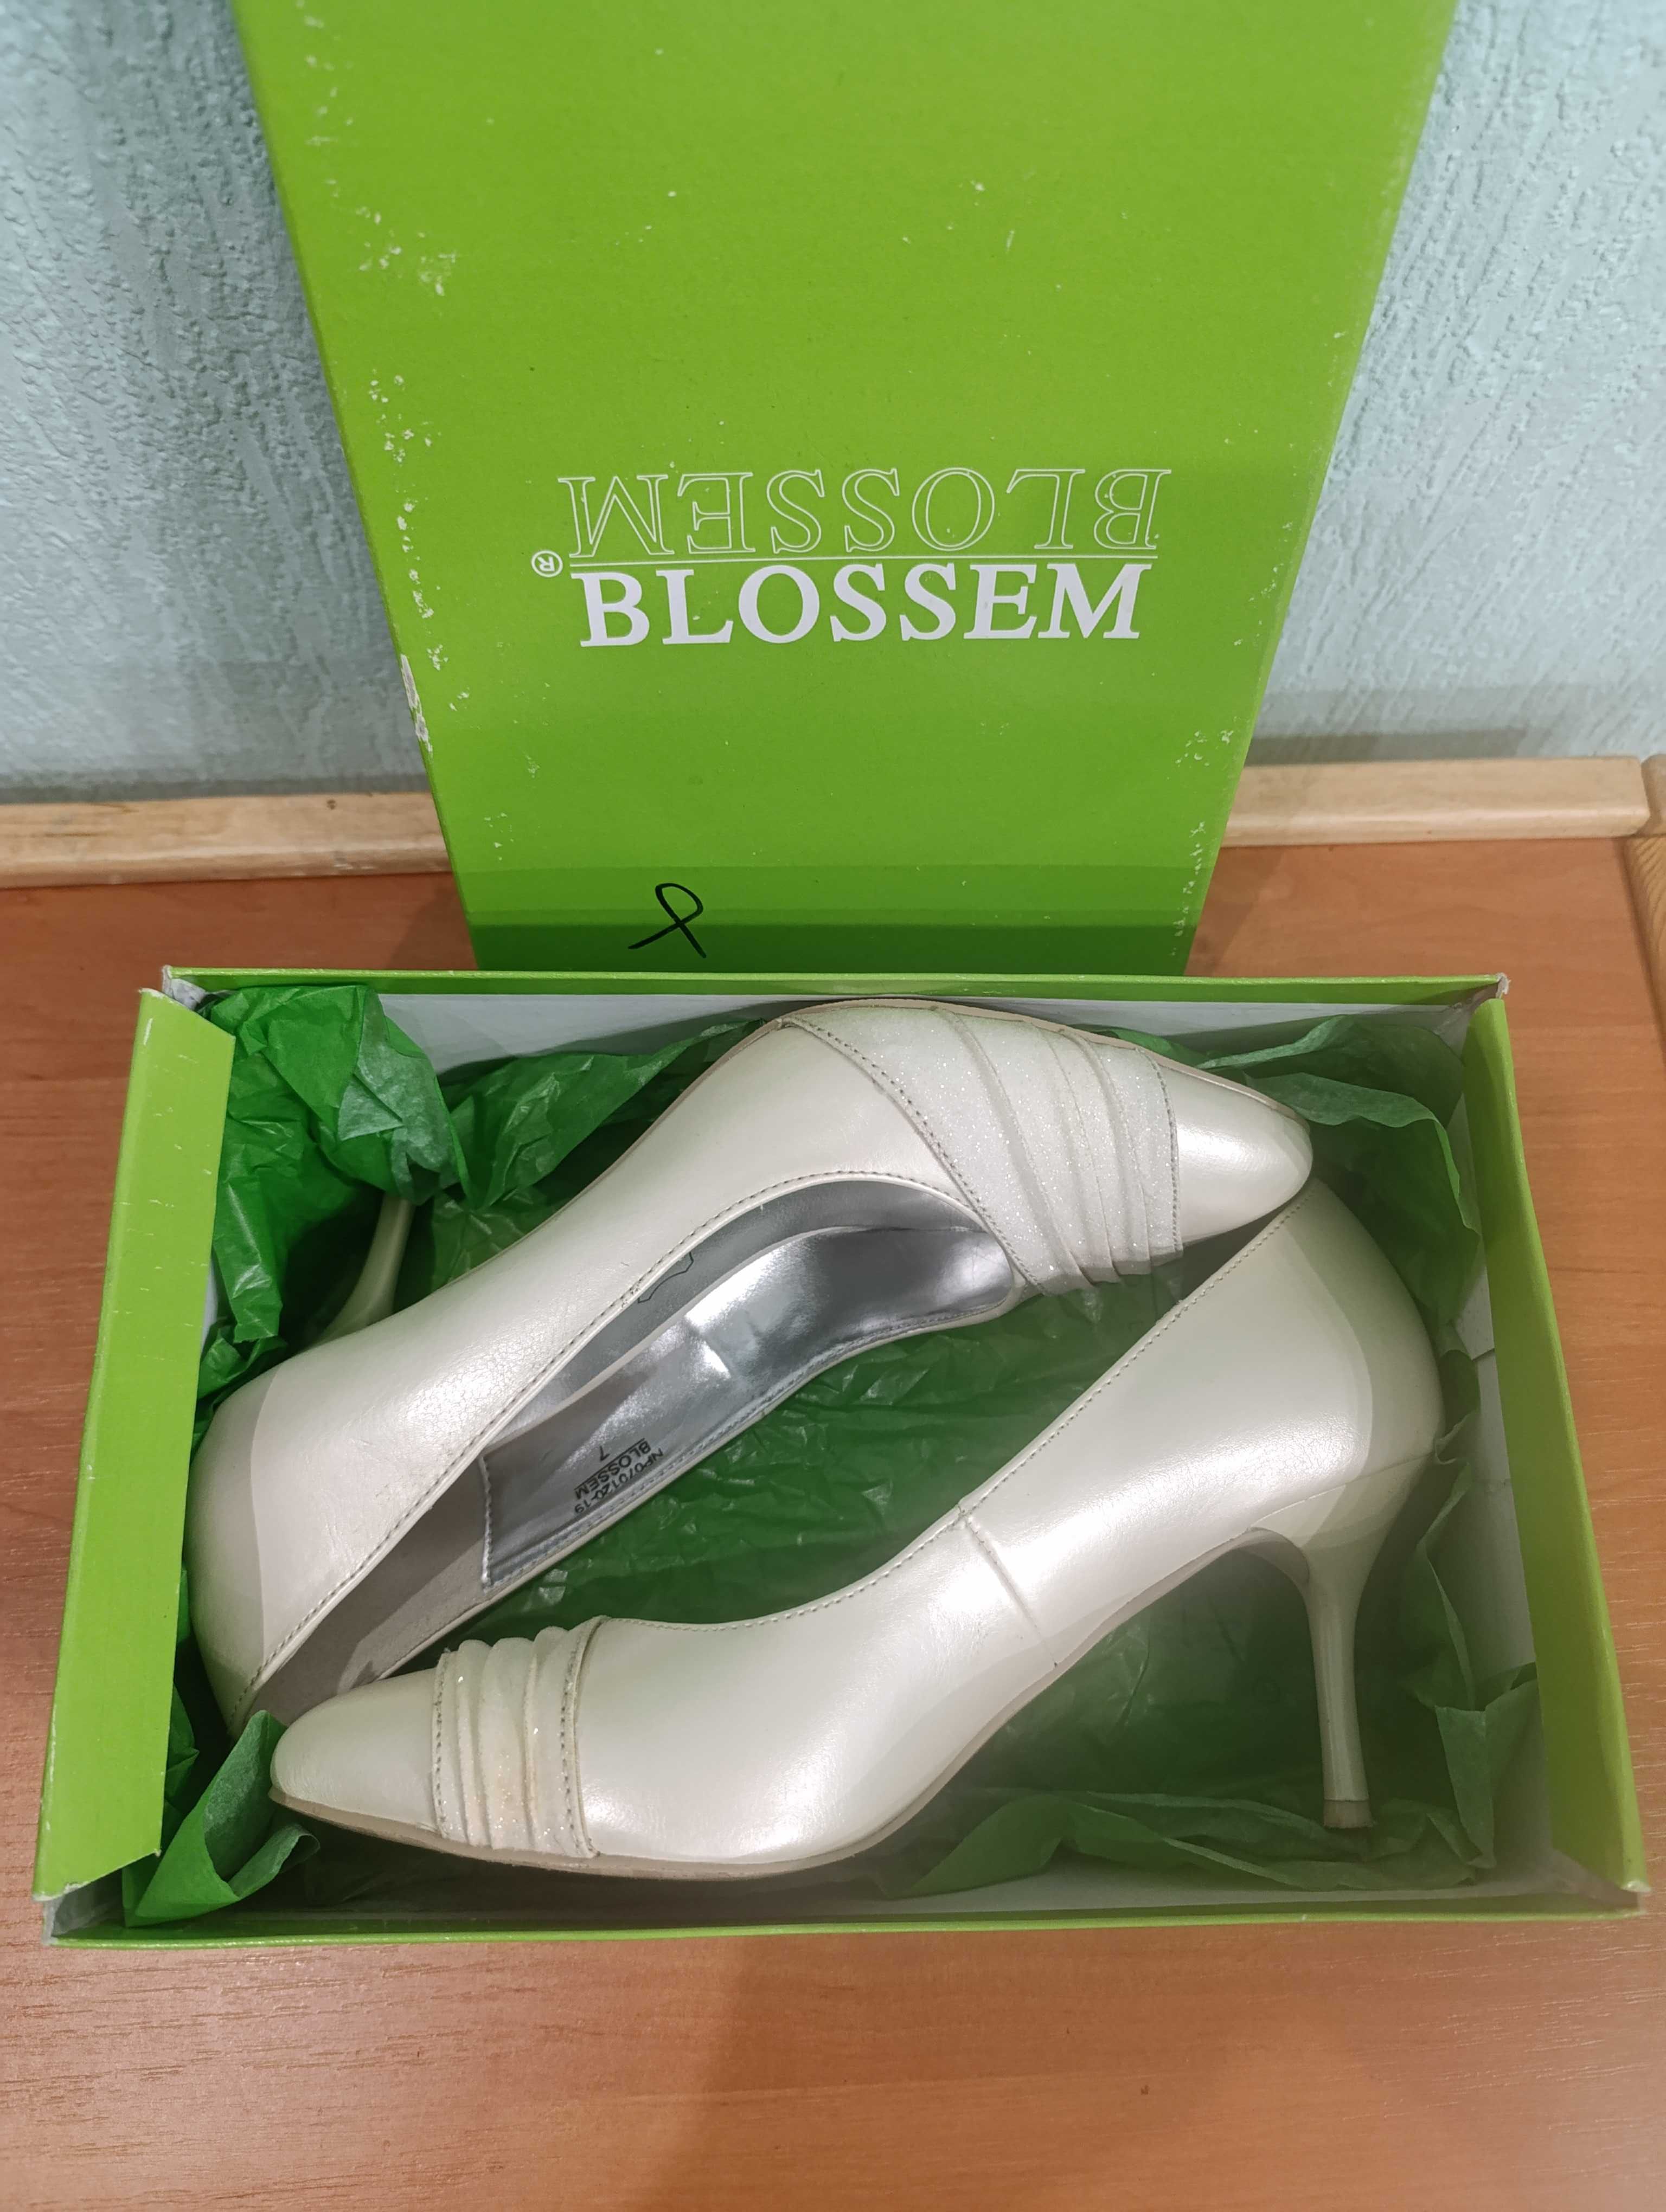 Туфлі жіночі BLOSSEM, розмір 7 (37), каблук 7см, відмінний стан